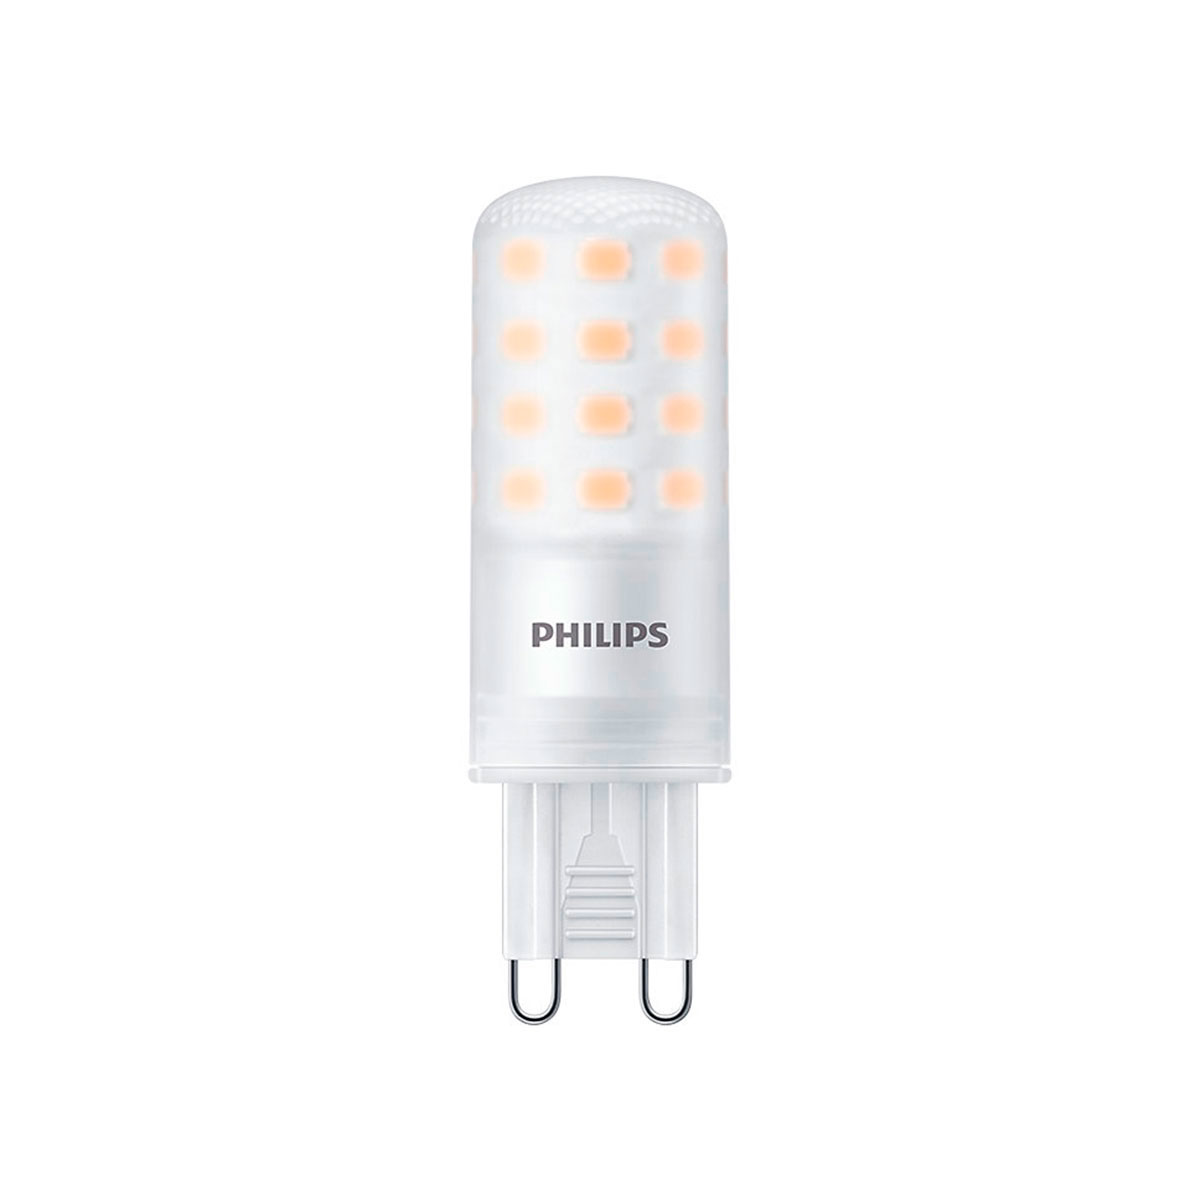 Frivillig Ulv i fåretøj stak Philips dæmpbar LED pære G9 - 4W (40W) LED stift - Køb her